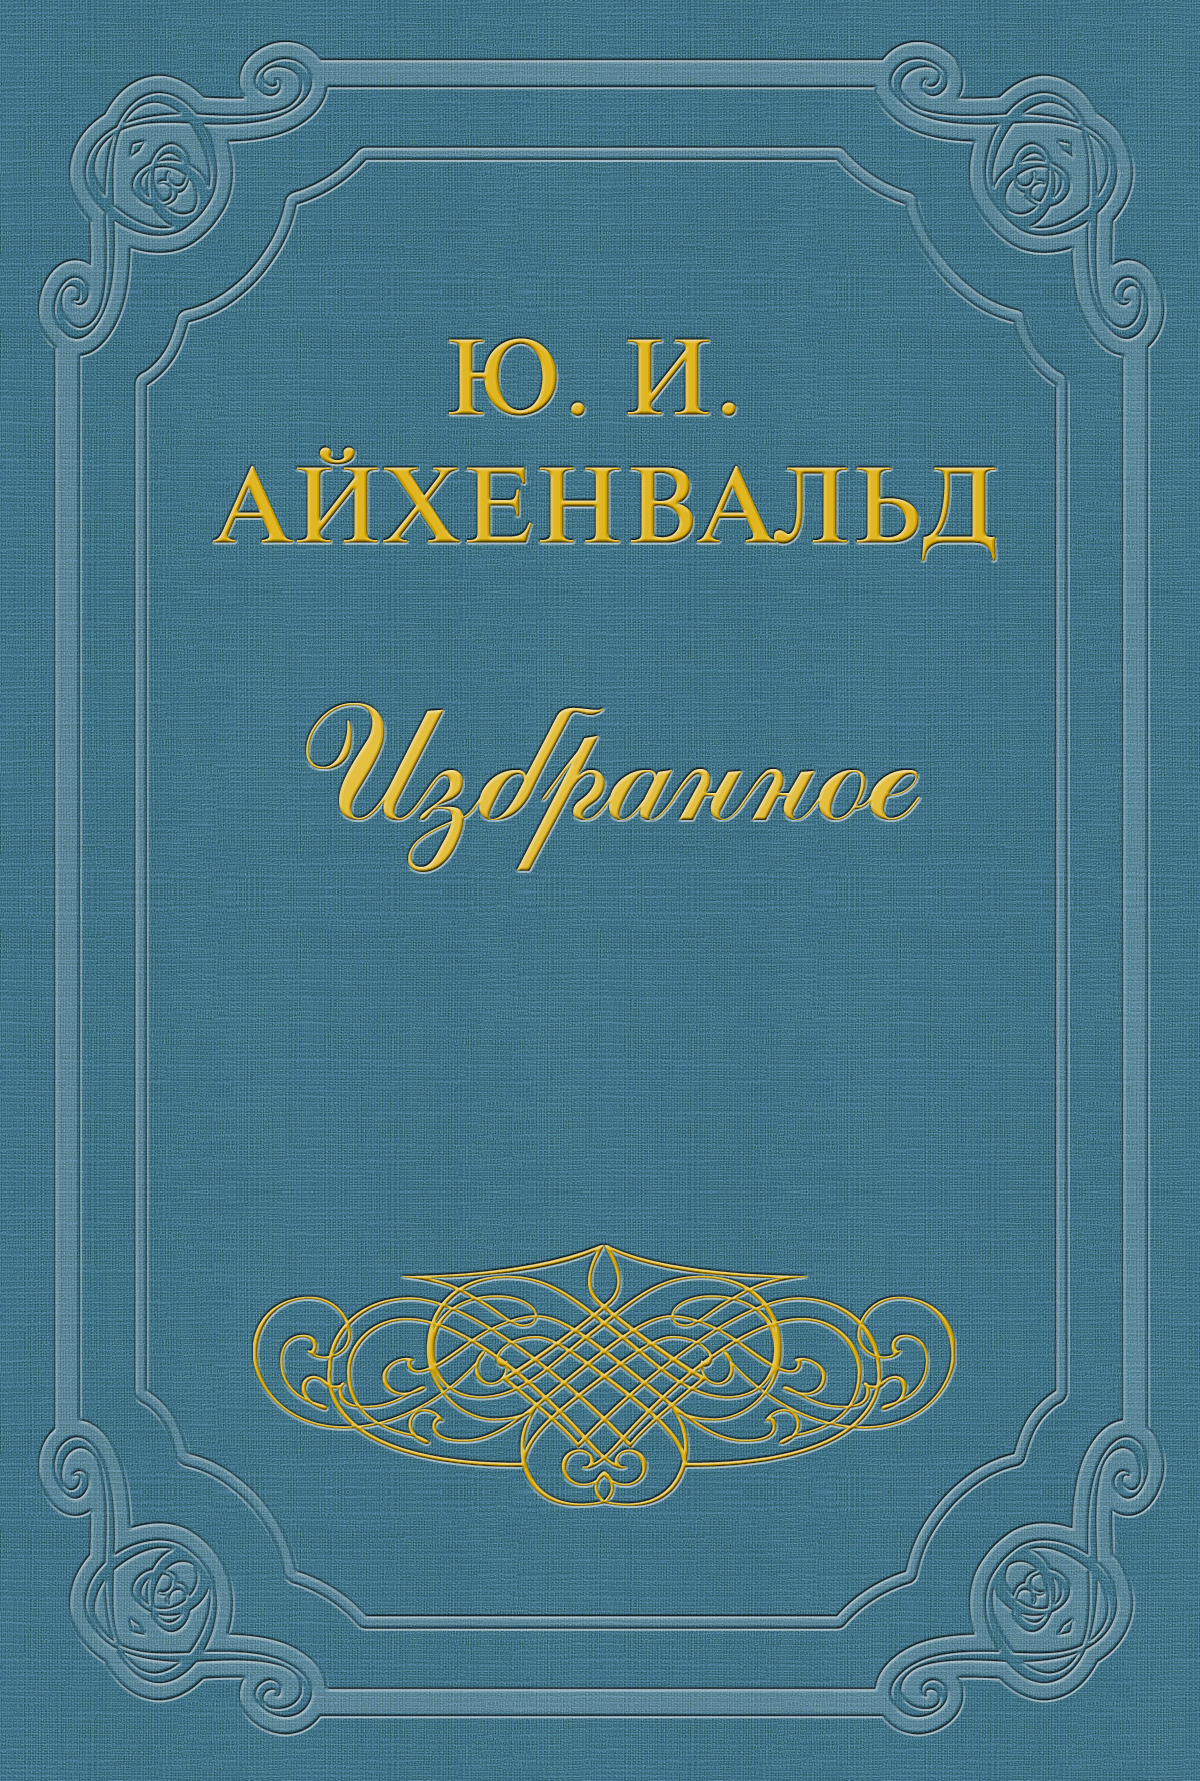 Книга Никитин из серии , созданная Юлий Айхенвальд, может относится к жанру Критика. Стоимость книги Никитин  с идентификатором 2610405 составляет 5.99 руб.